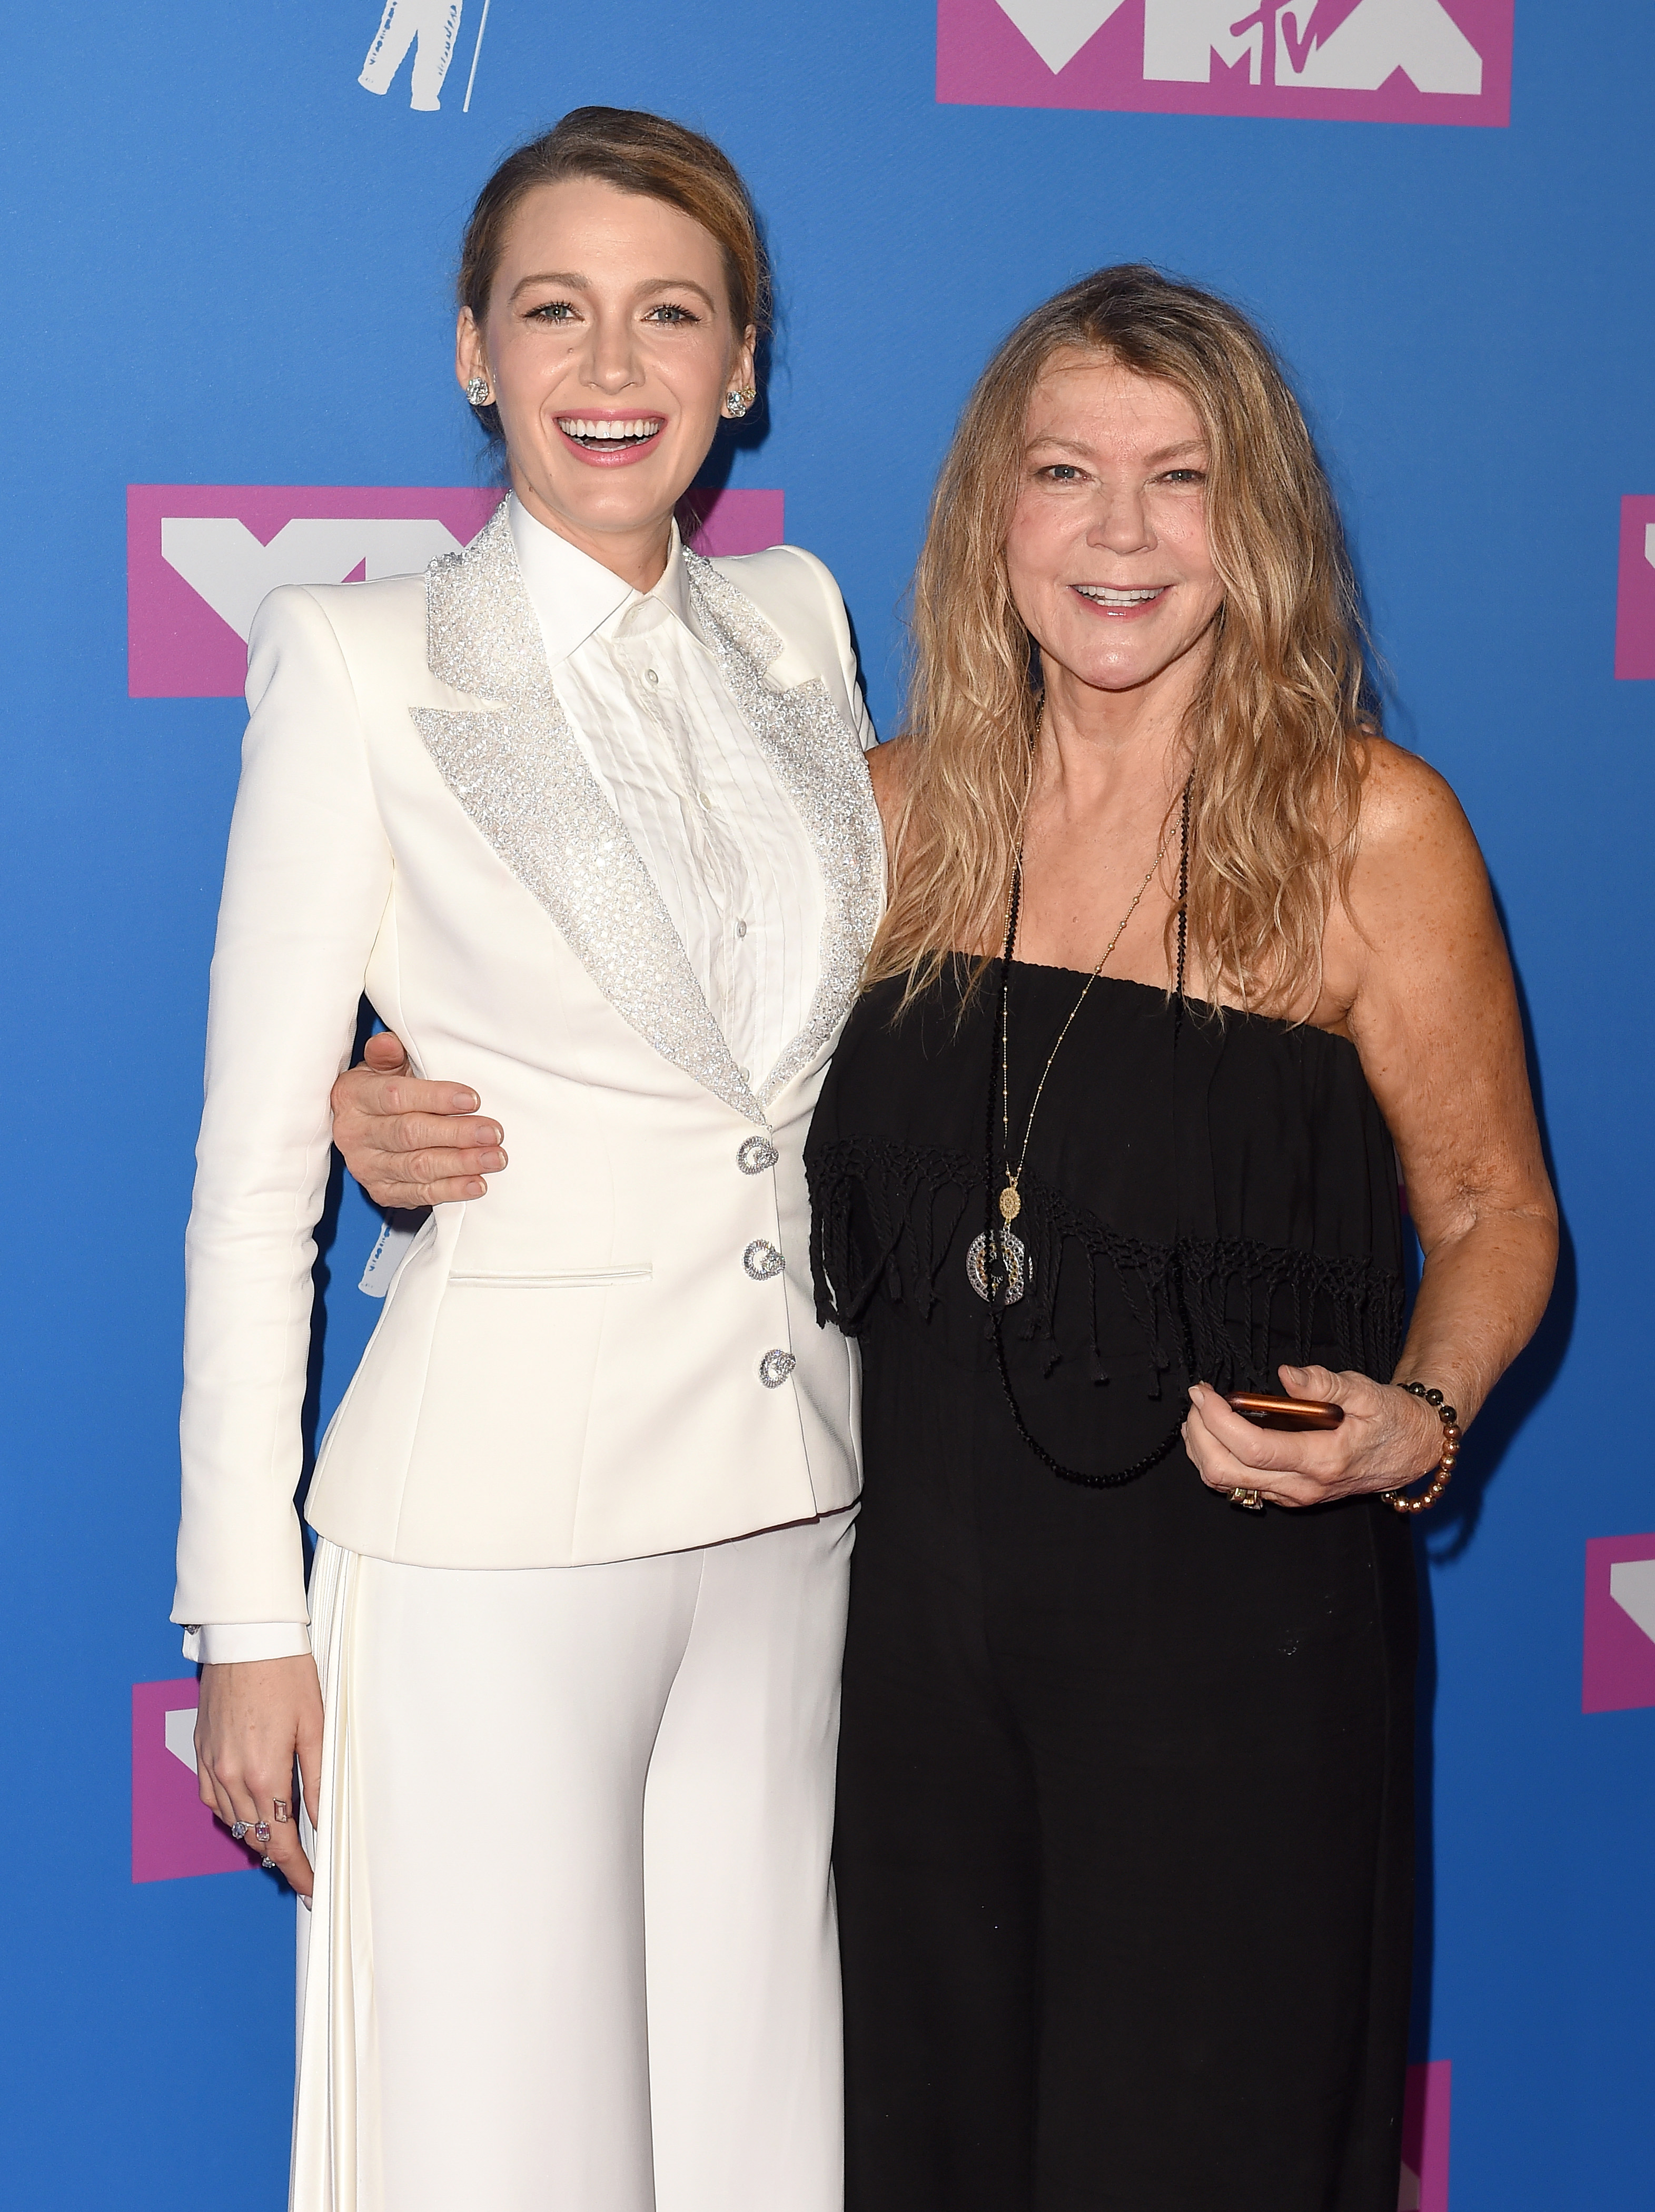 Blake y Elaine Lively asisten a los MTV Video Music Awards en Nueva York, el 20 de agosto de 2018 | Fuente: Getty Images